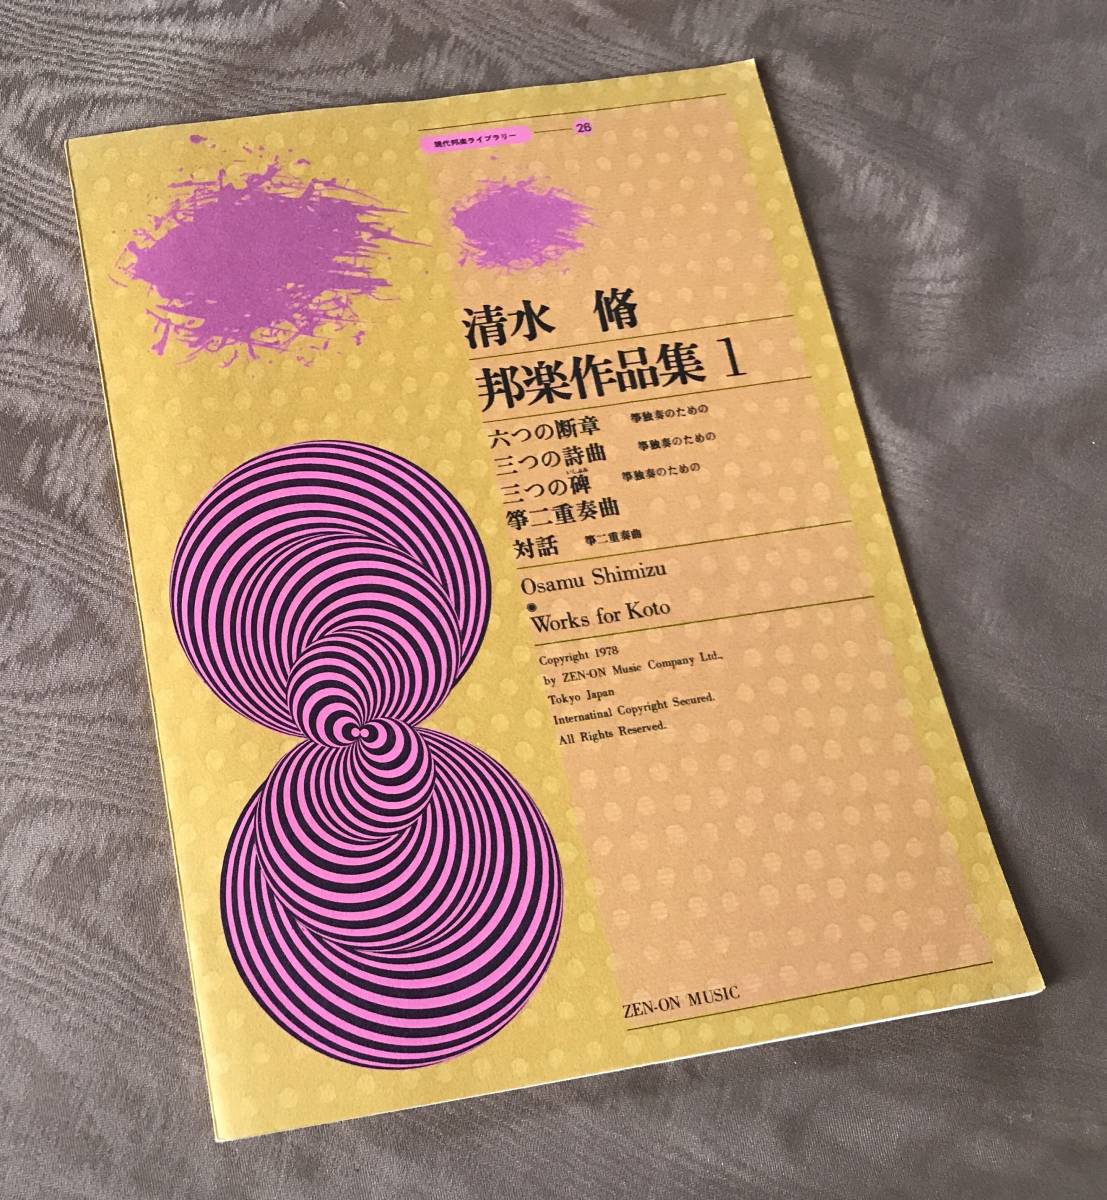  Shimizu . Японская музыка сборник произведений .... 2 -слойный . искривление поиск : Shimizu . музыкальное сопровождение . кото мир кото . приятный приятный .. искривление .. современная музыка оценка Miyagi дорога самец LP CD